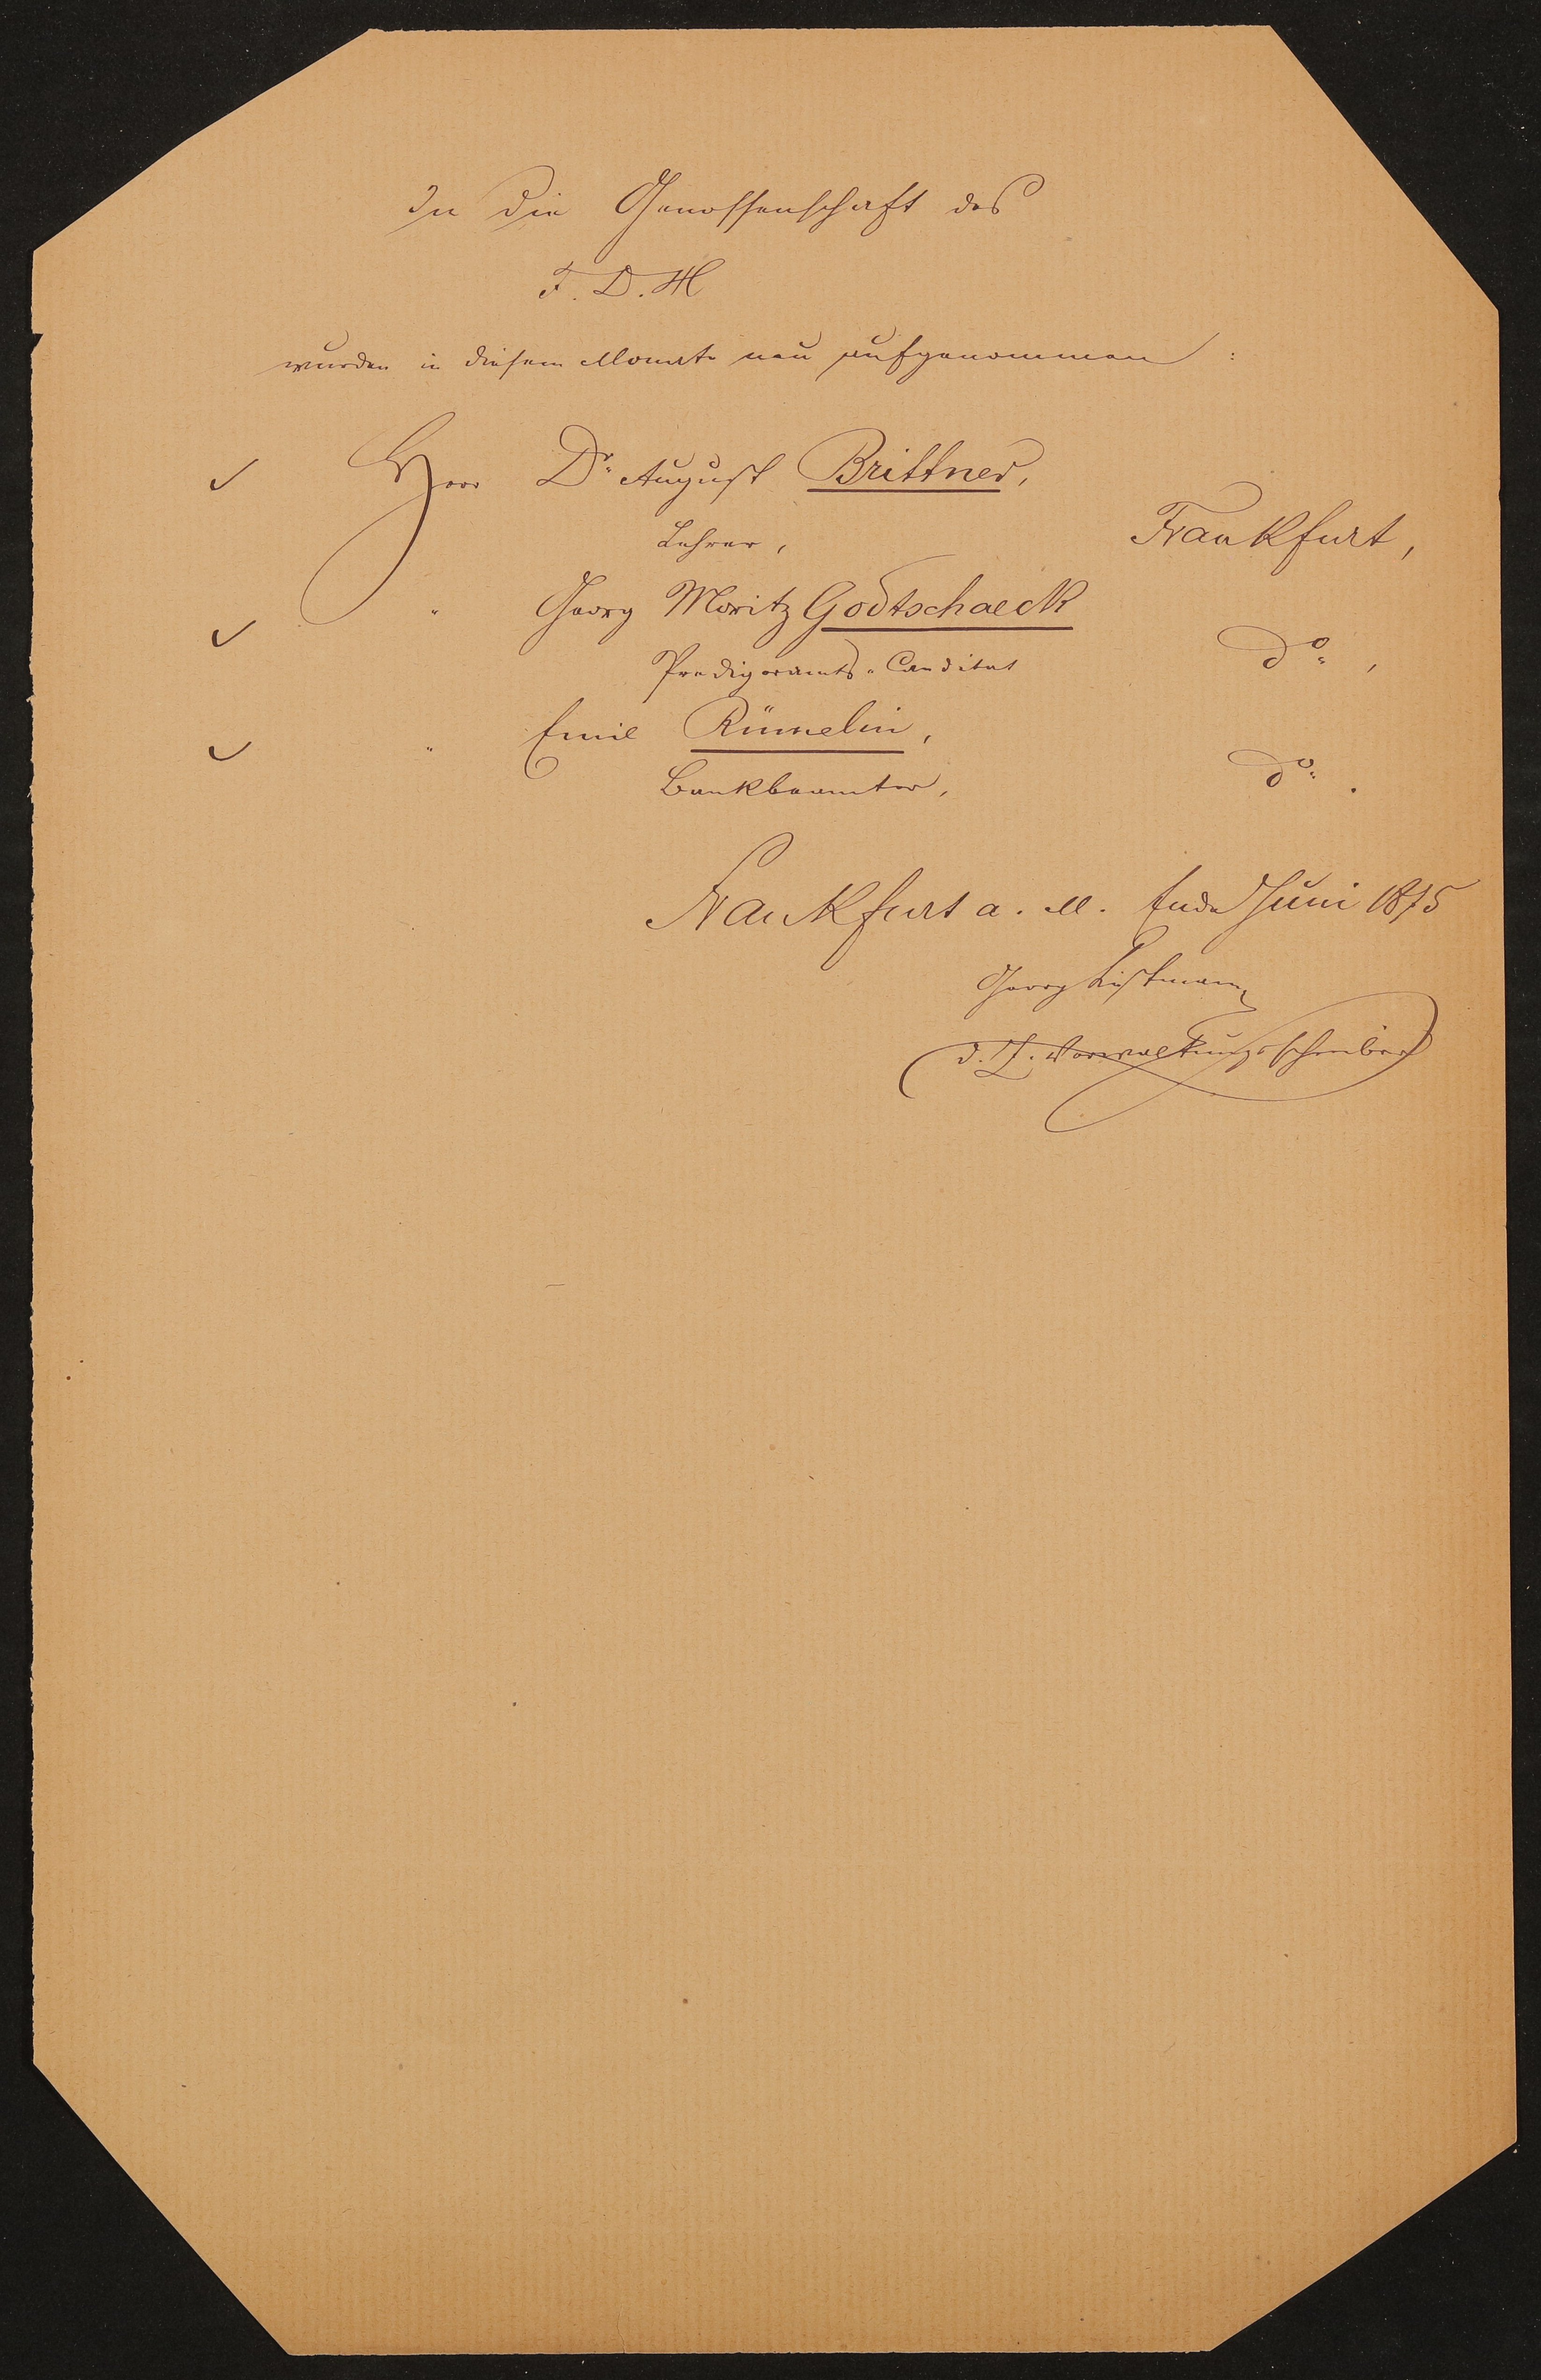 Liste "In die Genossenschaft des F.D.H. wurden in diesem Monat neu aufgenommen" (Juni 1875) (Freies Deutsches Hochstift / Frankfurter Goethe-Museum Public Domain Mark)